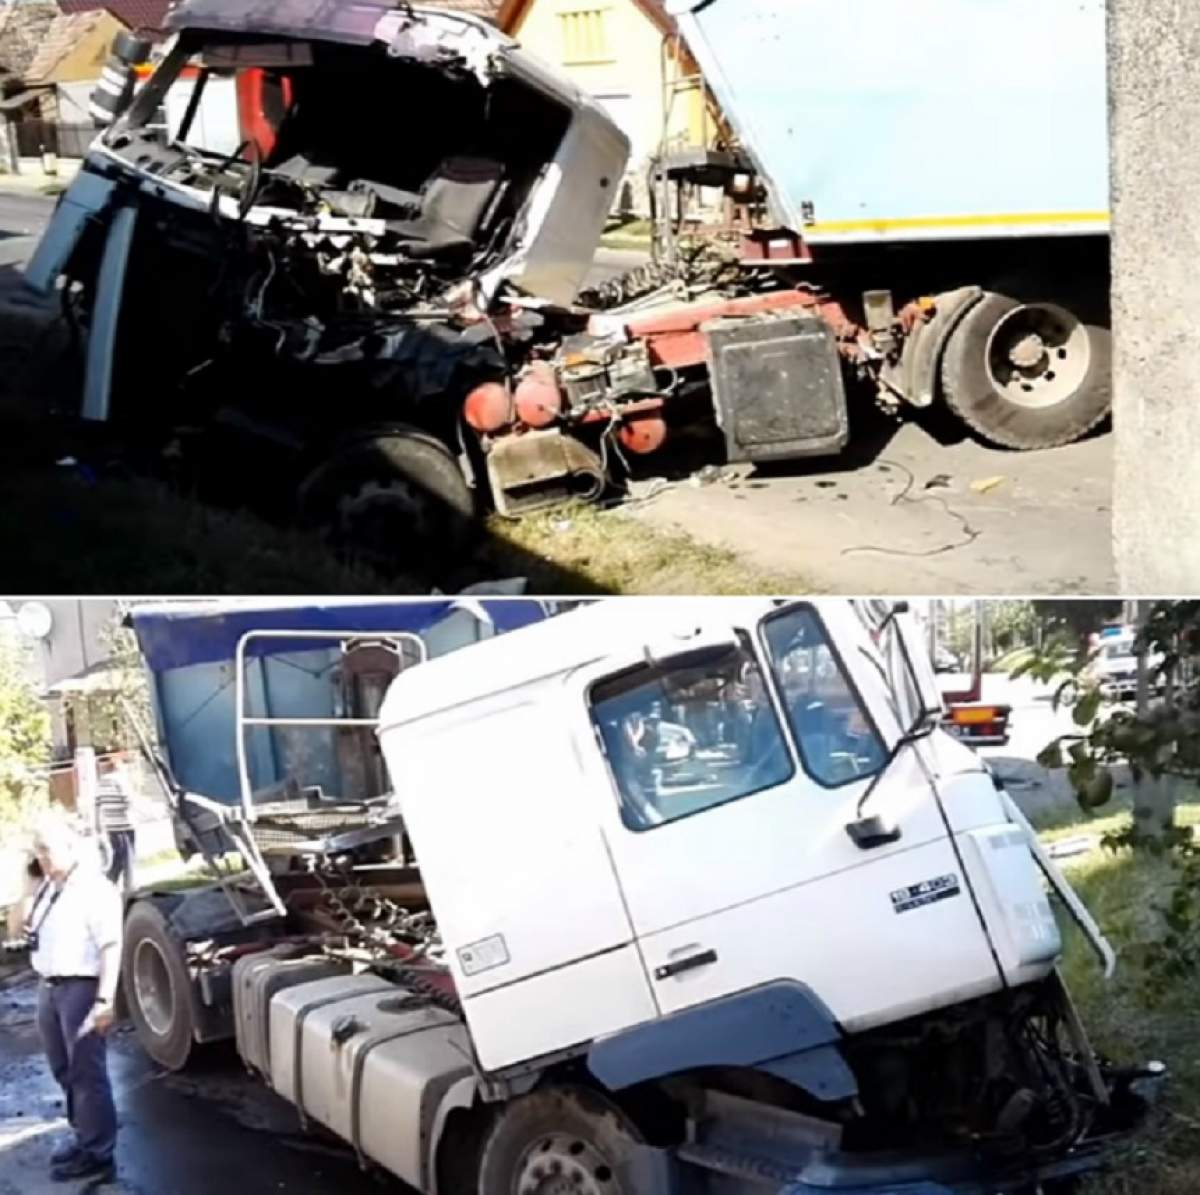 VIDEO / Accident grav în judeţul Mureş! Două TIR-uri s-au zdrobit reciproc